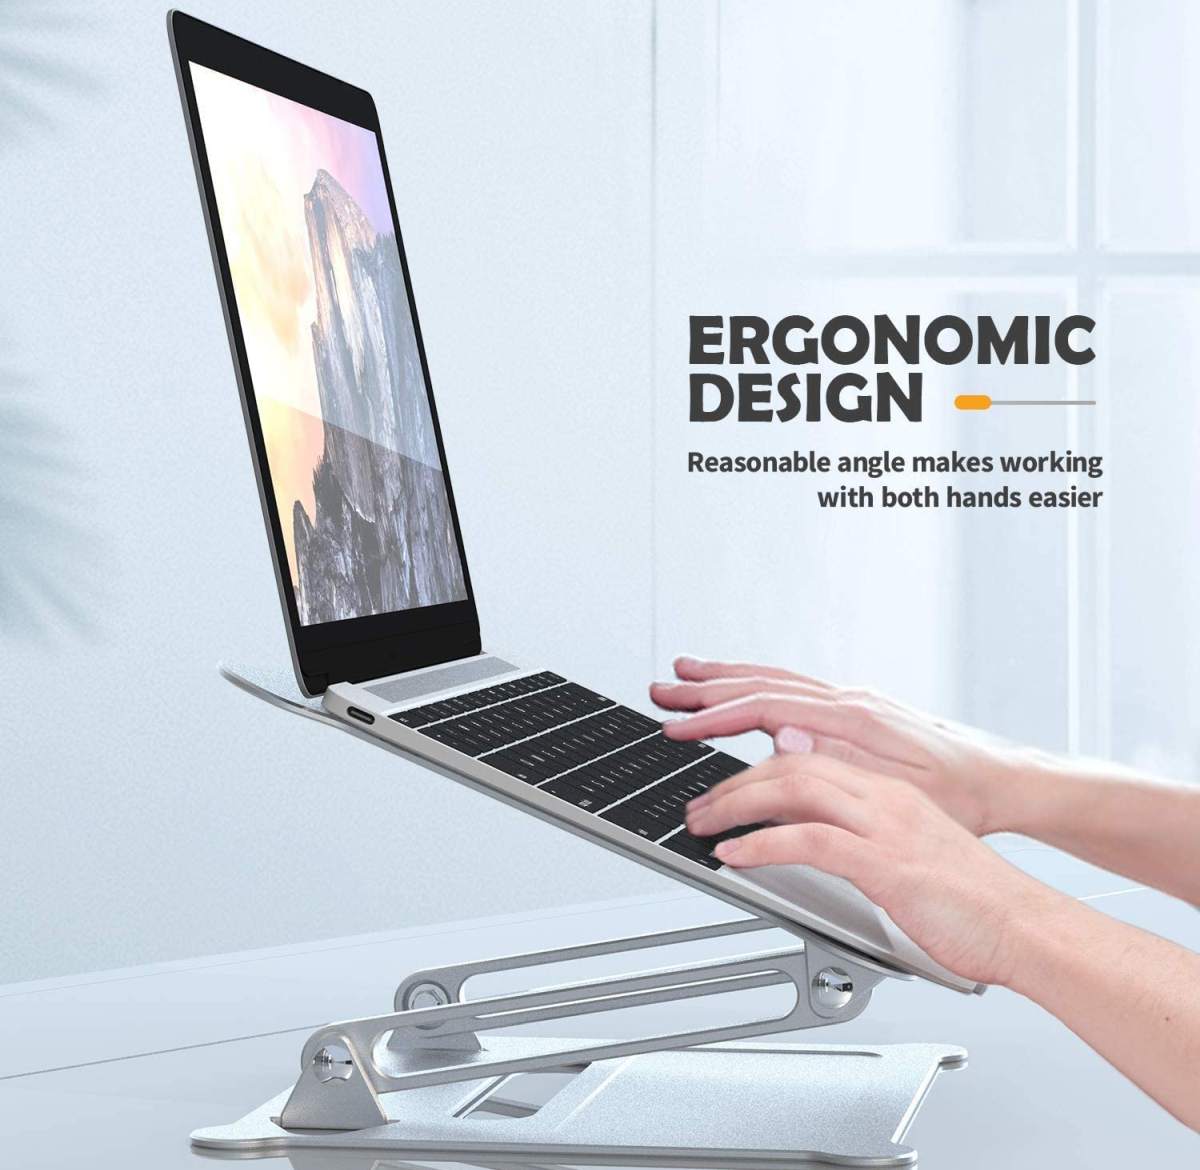 supporto-laptop-ergonomico-regolabile-notebook-macbook-prezzo-economico-lowcost